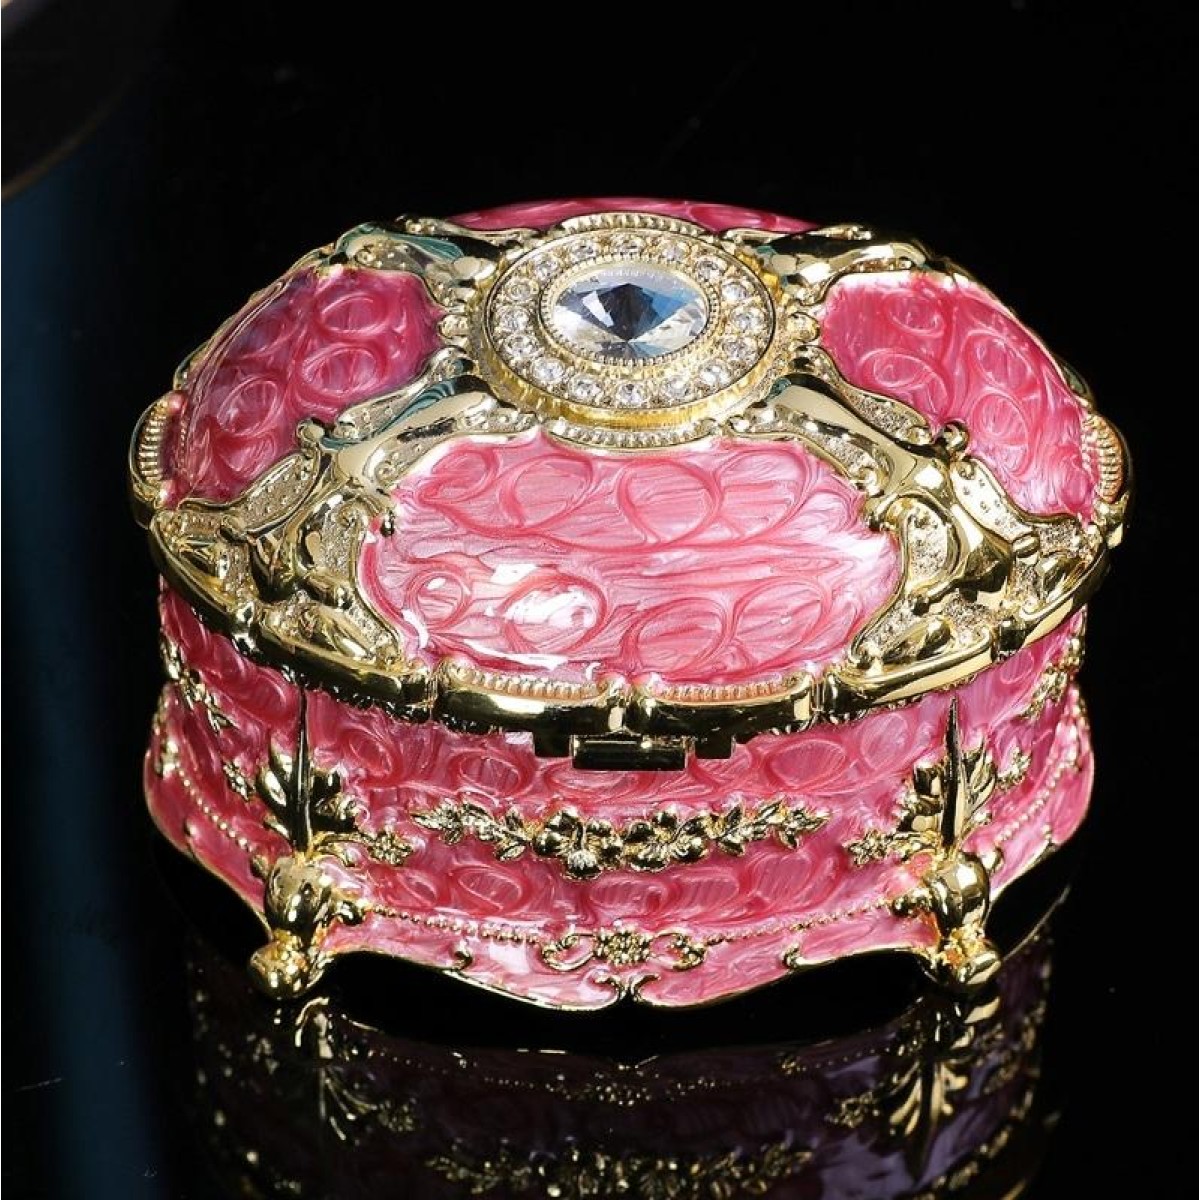 Metal Oval Diamond Jewelry Storage Box Birthday Wedding Gift, Size: 8.5x6x6cm(Pink)